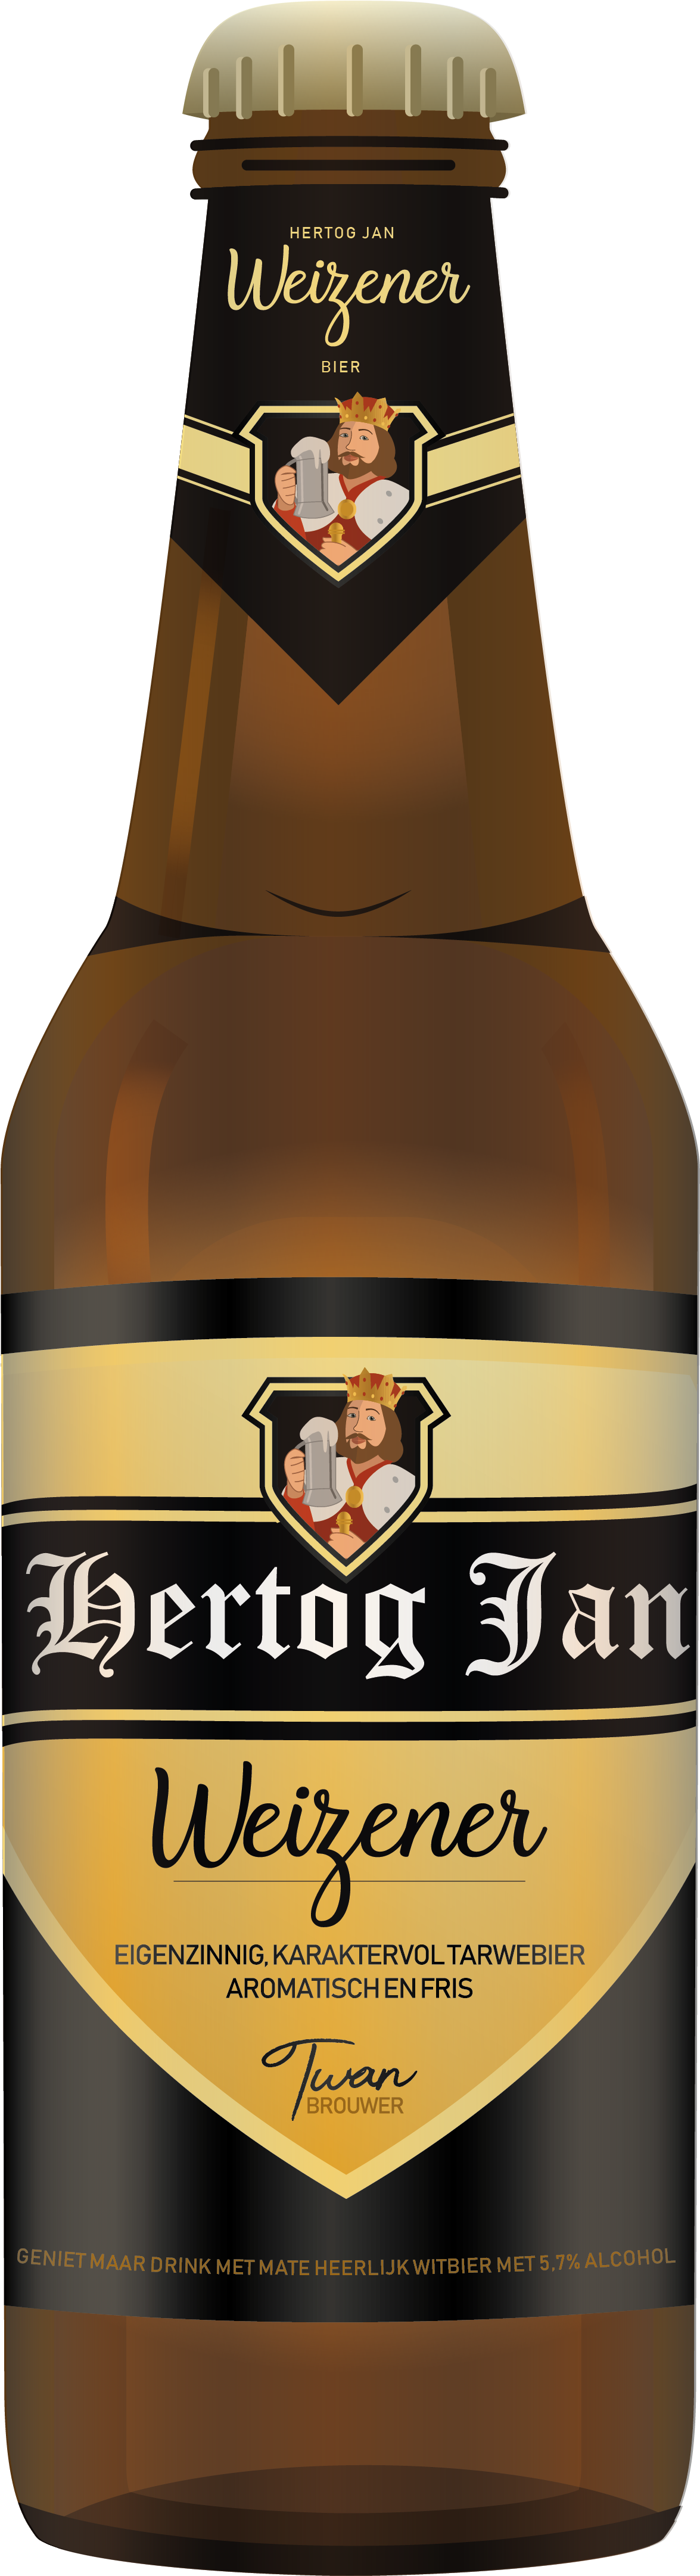 Hertog Jan Corona Beer, Beer Bottle - Wheat Beer Clipart (2298x4585), Png Download